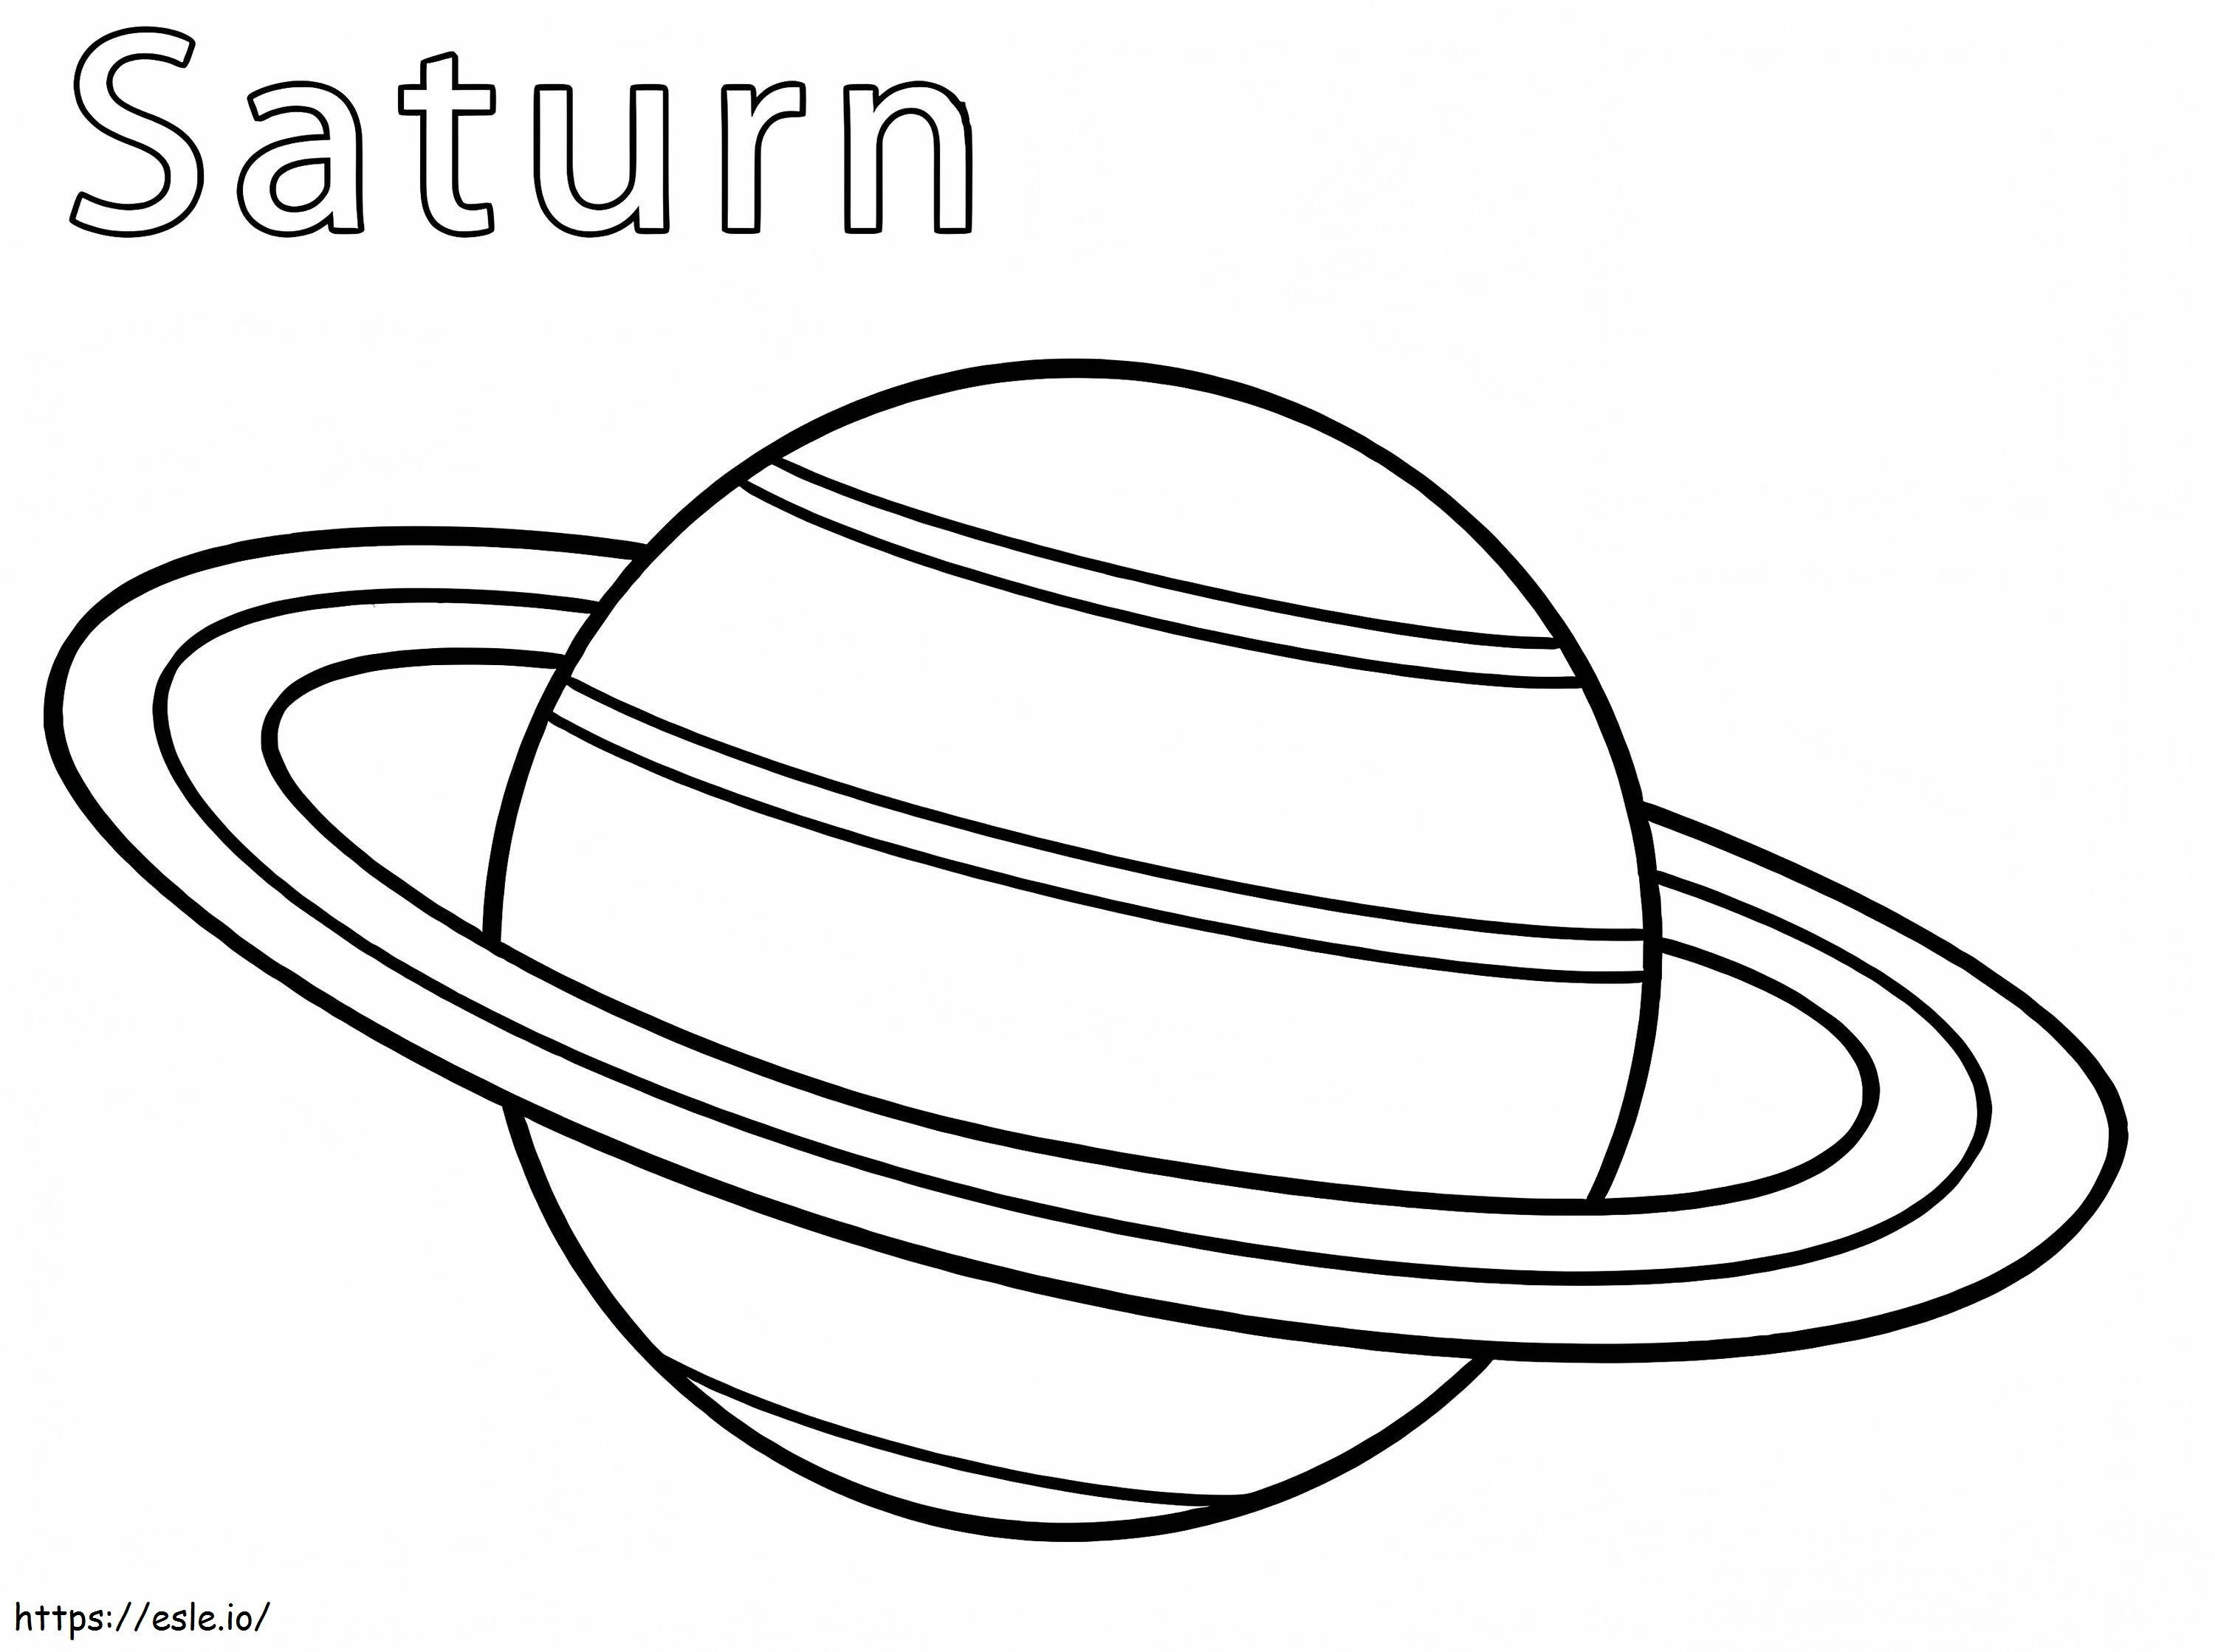 Planeten Saturnus kleurplaat kleurplaat